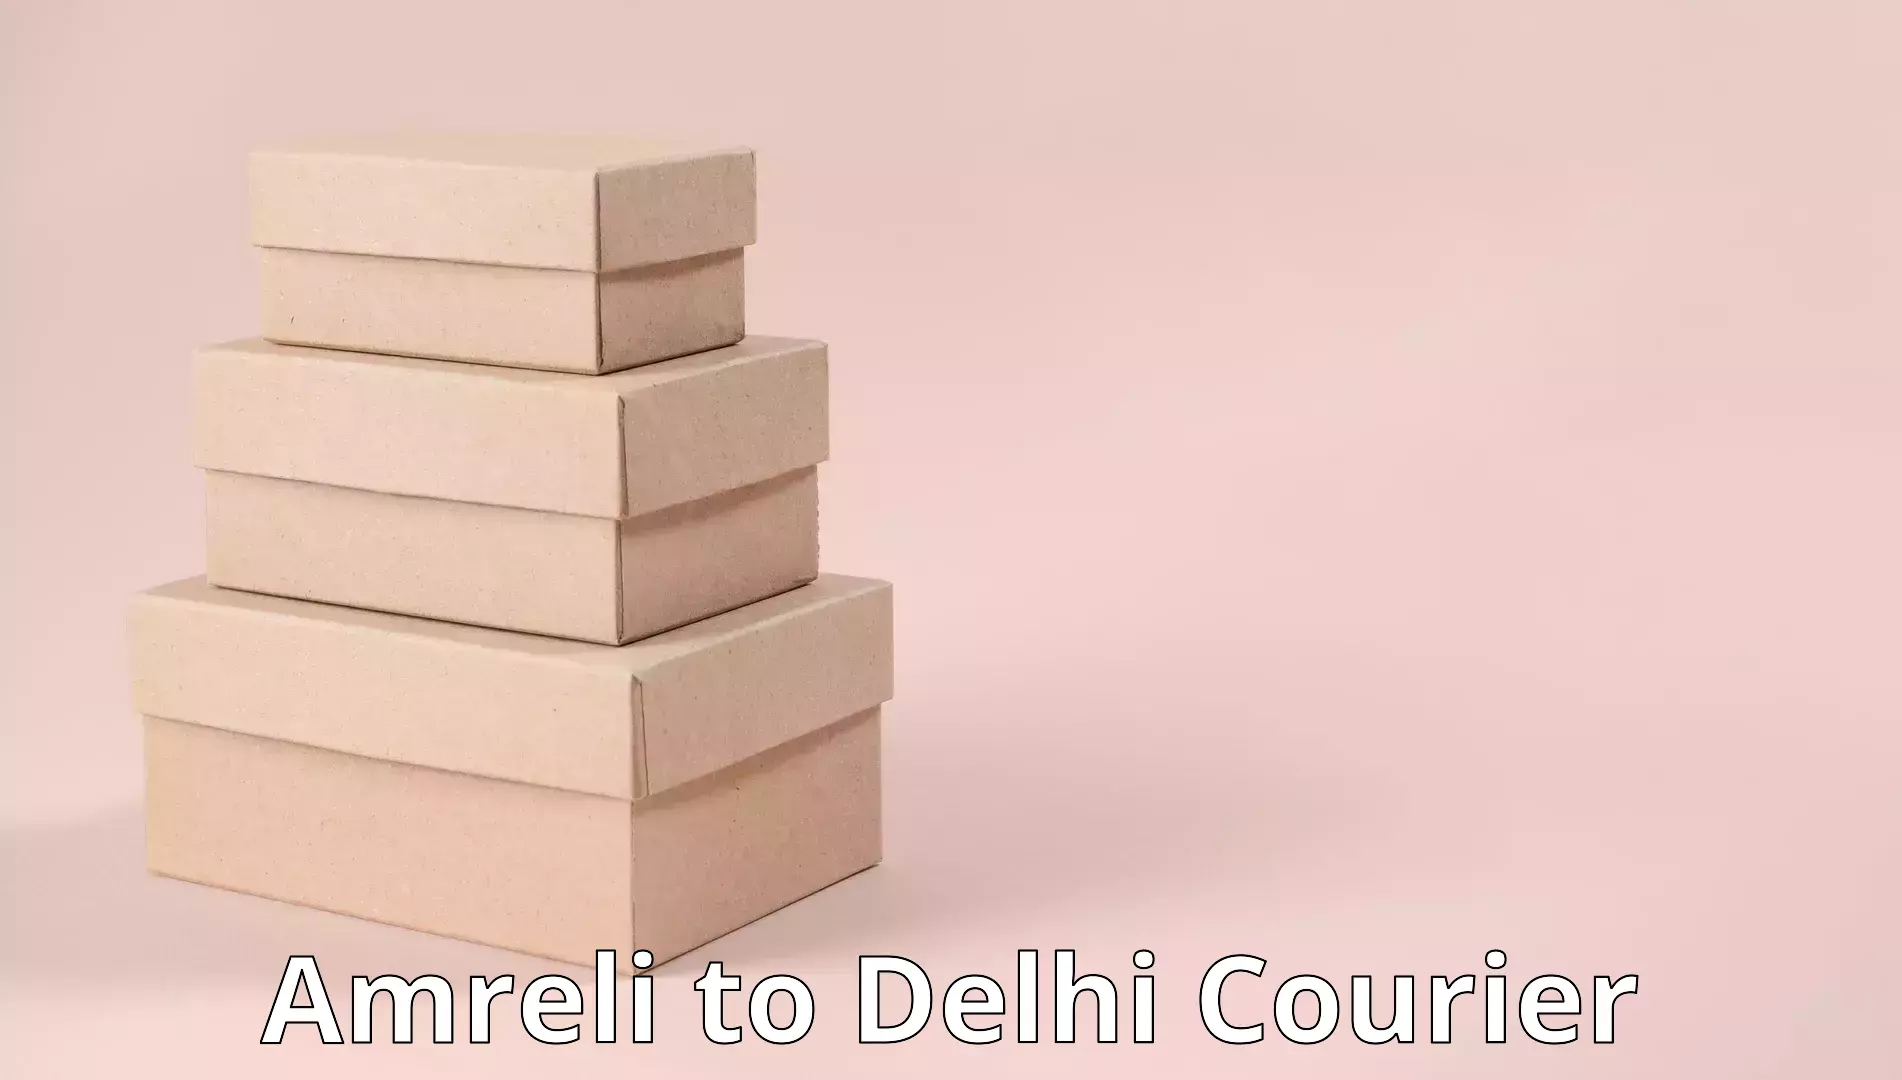 Furniture delivery service Amreli to Delhi